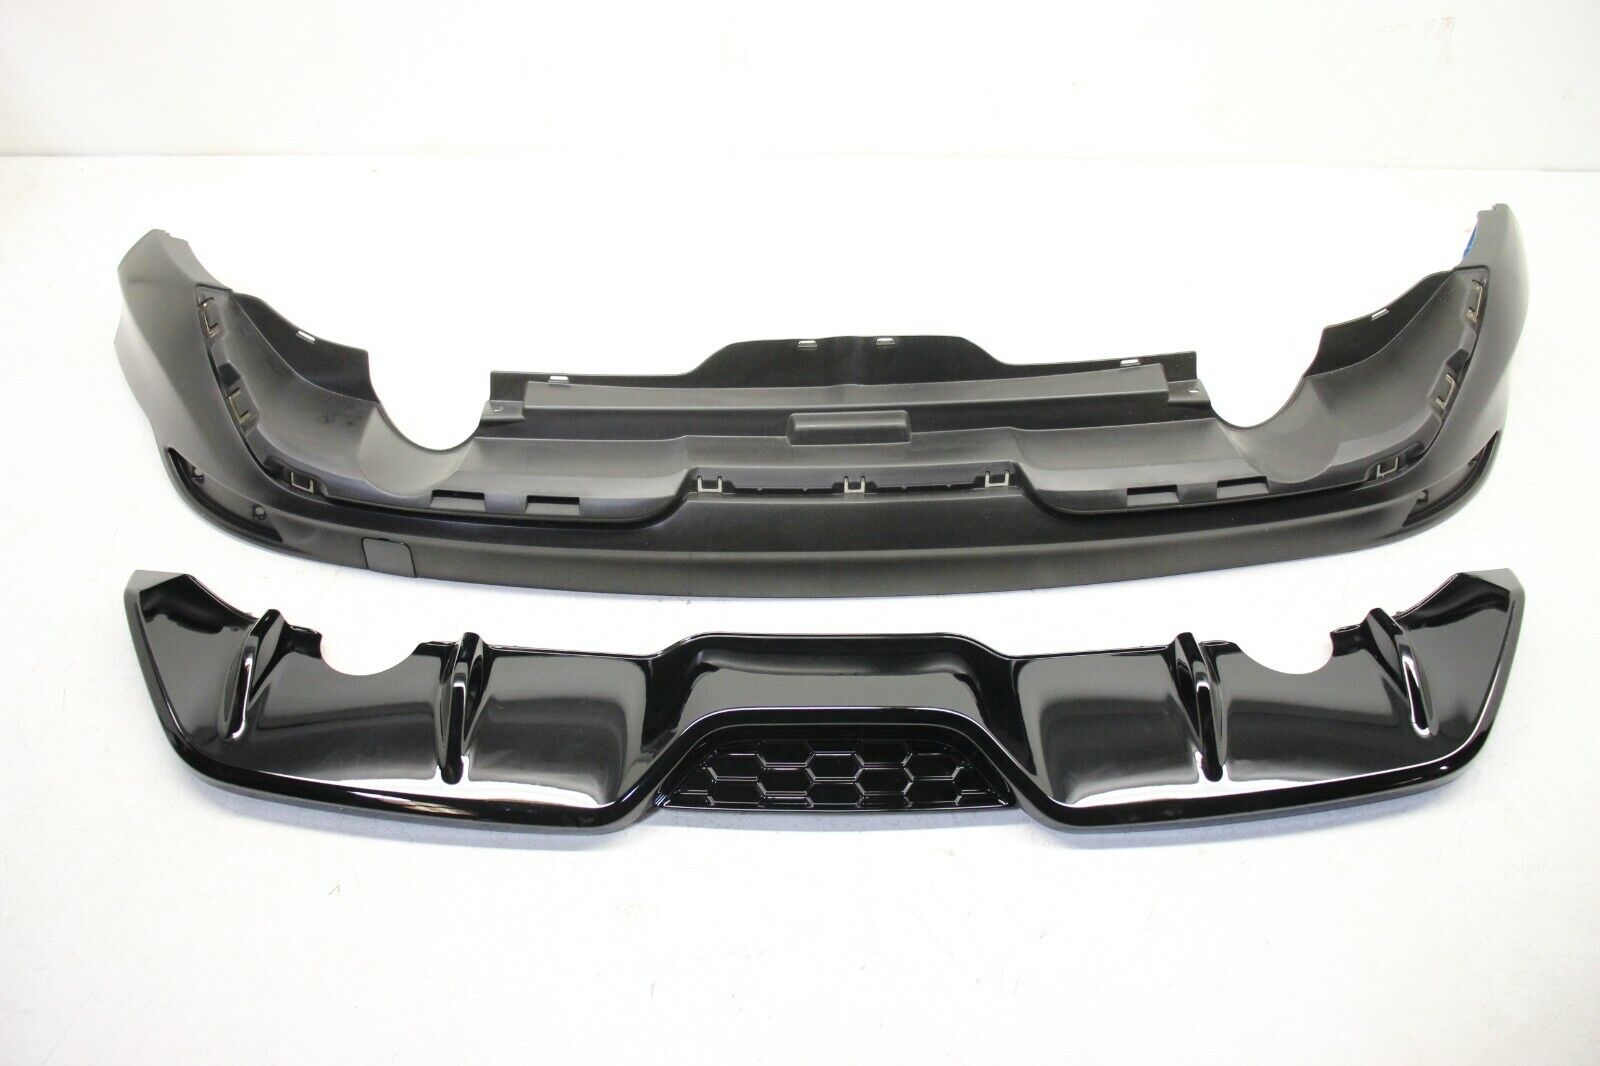 New OEM Ford Focus REAR Bumper Body Aero Air Difuser Dam Spoiler ZETEC 2012-2014